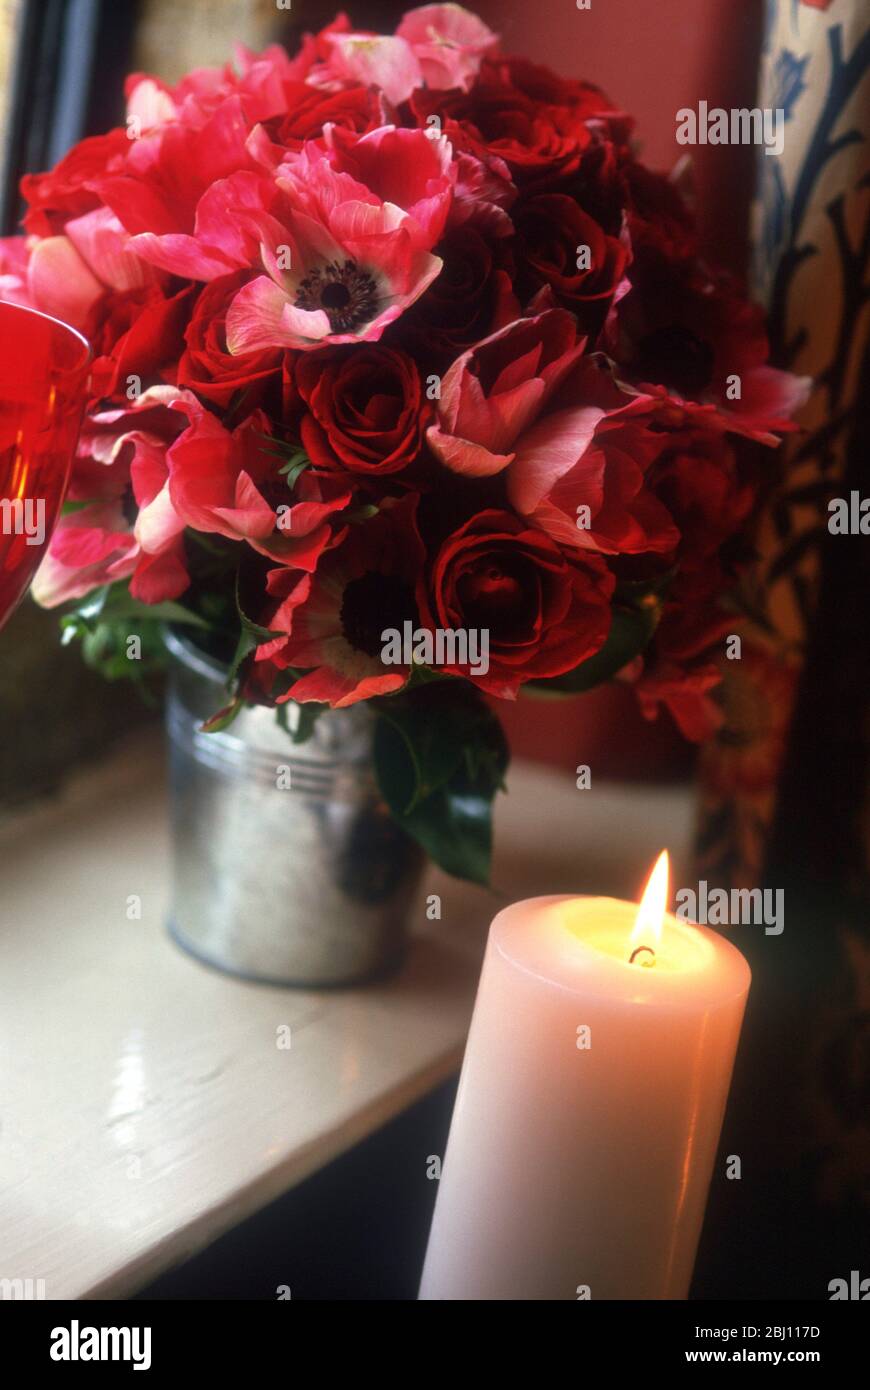 Strauß roter Rosen und Anemonen in Metallblumeneimer mit Kerze - Stockfoto